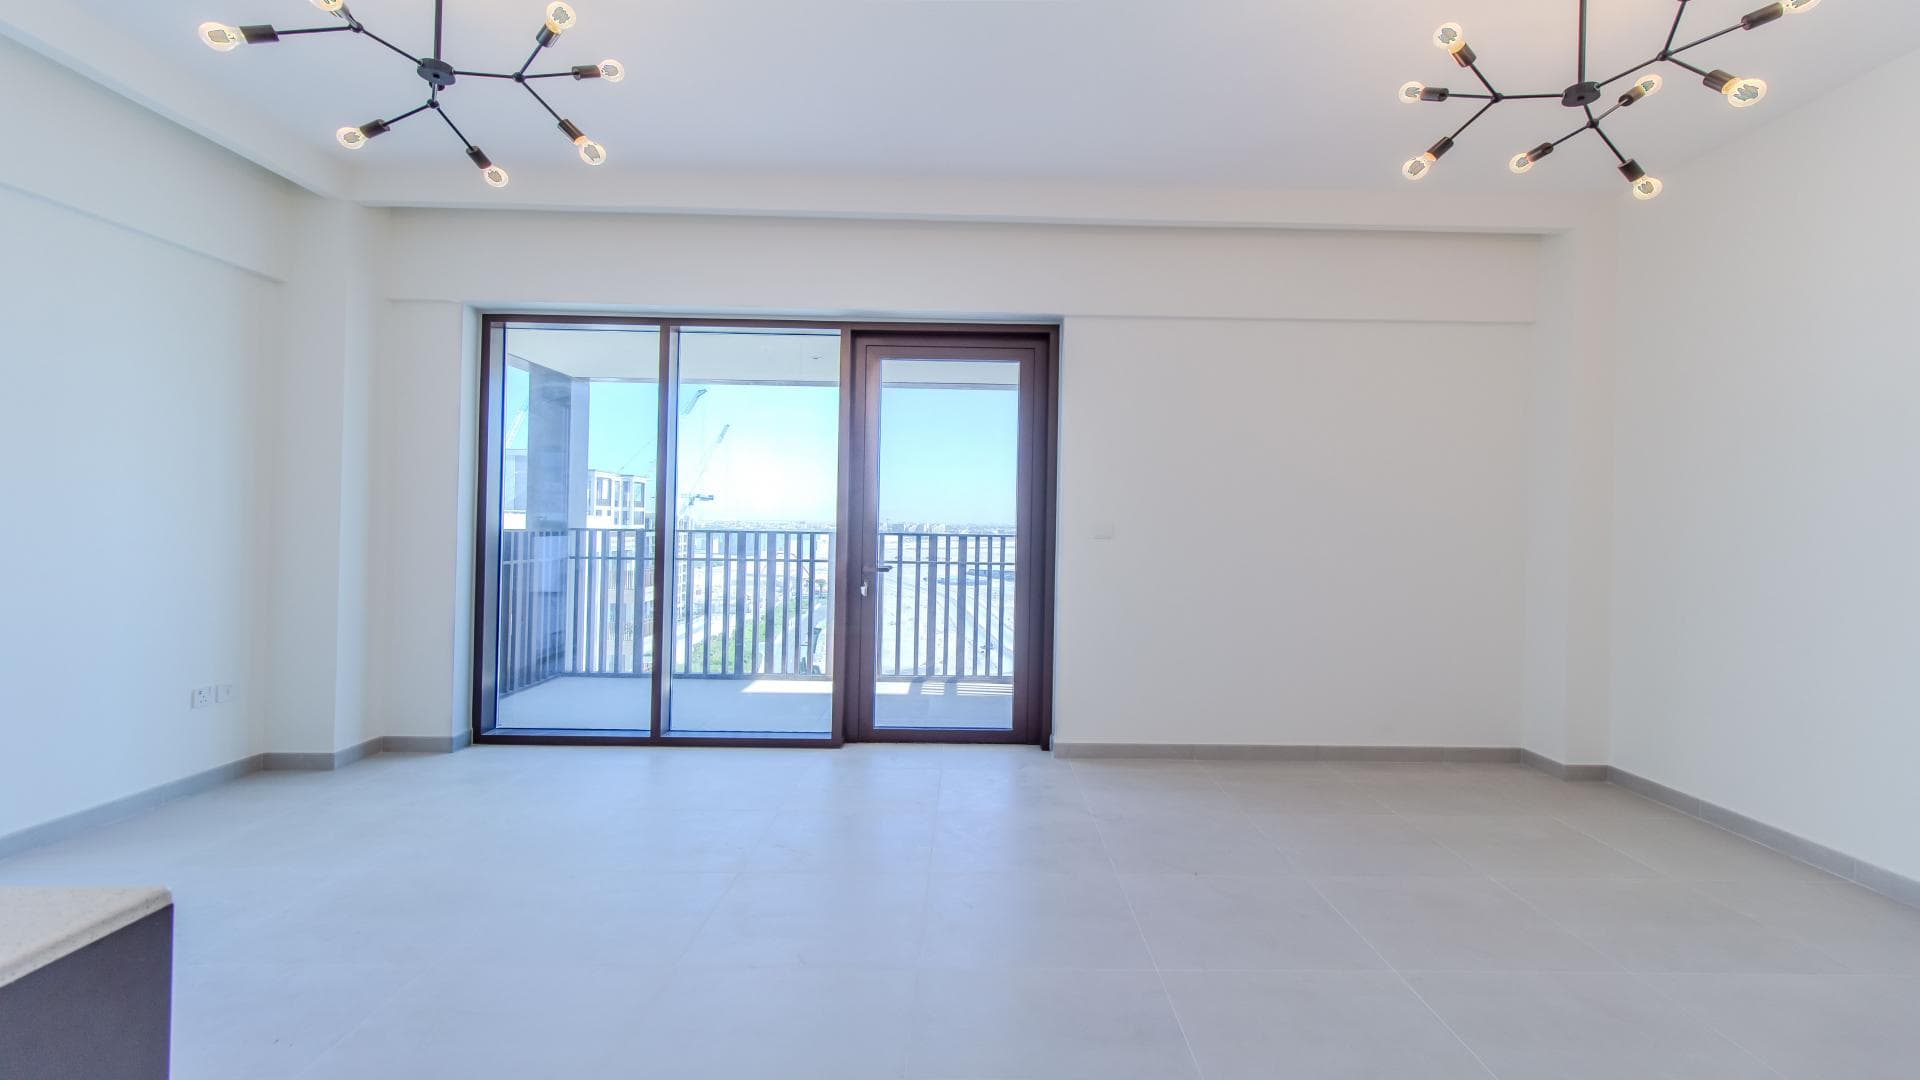 3 Bedroom Apartment For Rent Al Thamam 29 Lp38144 1b13a0afa1f2af00.jpg